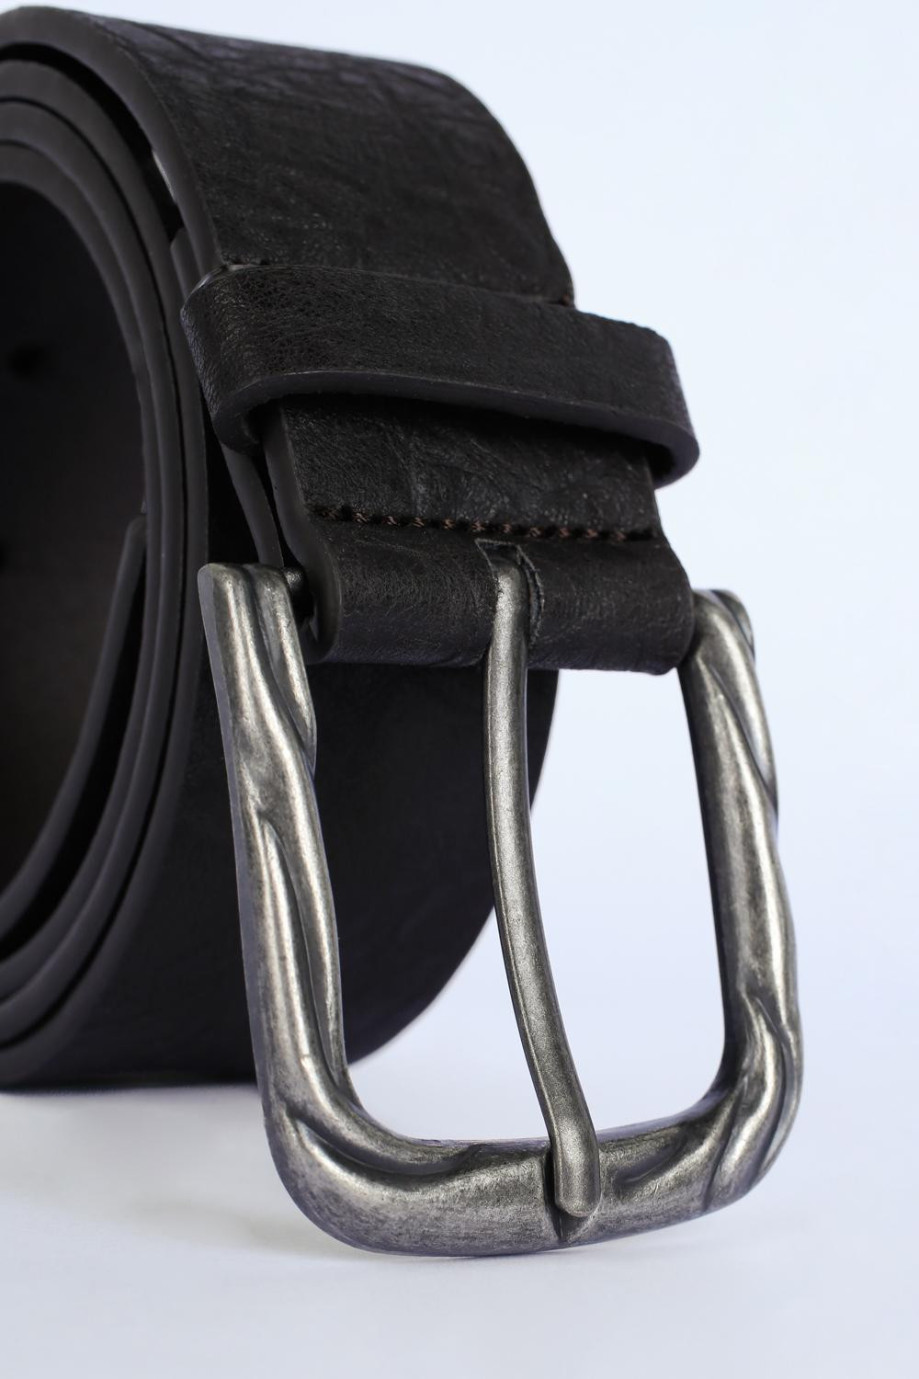 Cinturón café oscuro con detalles de texturas y hebilla metálica